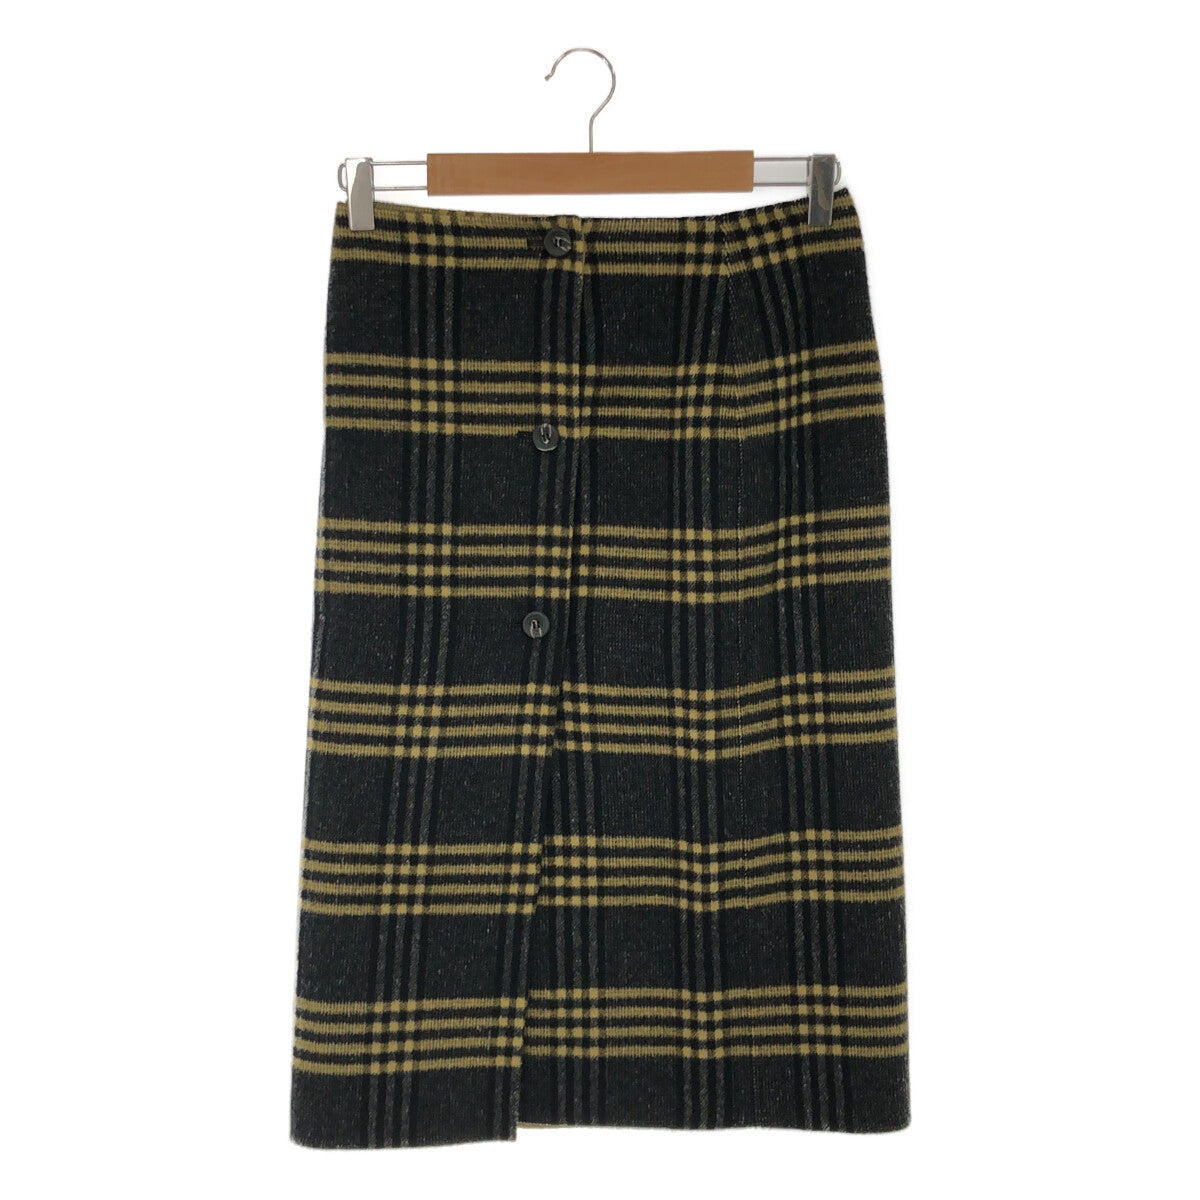 新品タグ付】IENA リバーシブルスカート サイズ36ロングスカート - www ...